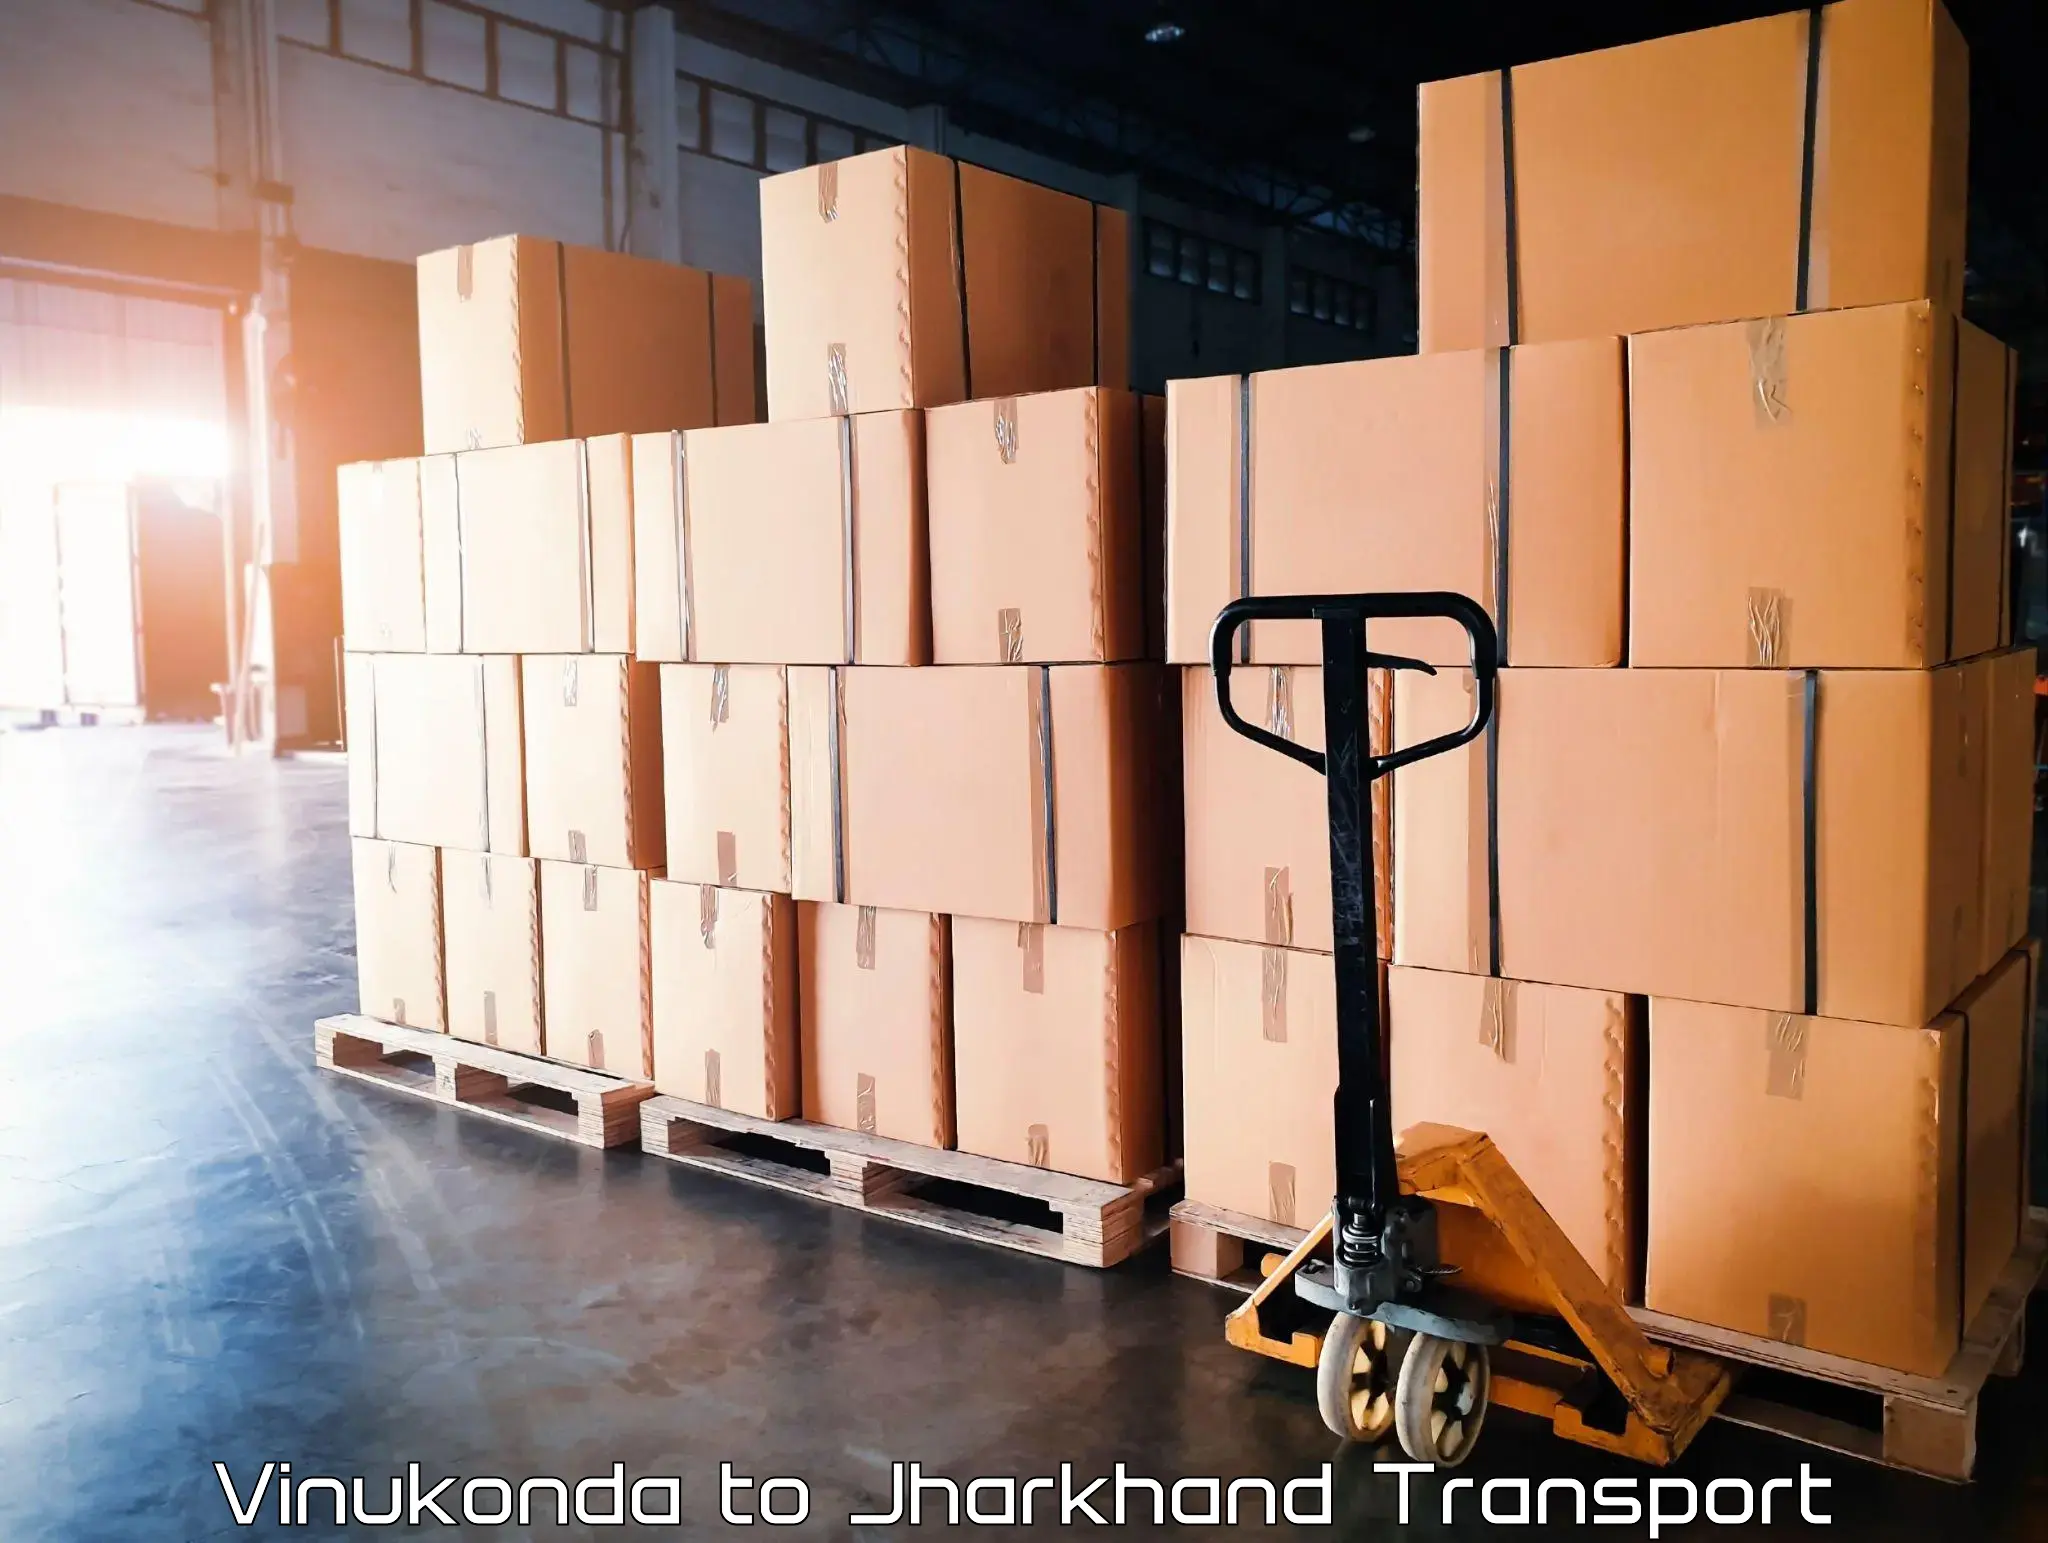 Nearest transport service Vinukonda to Doranda